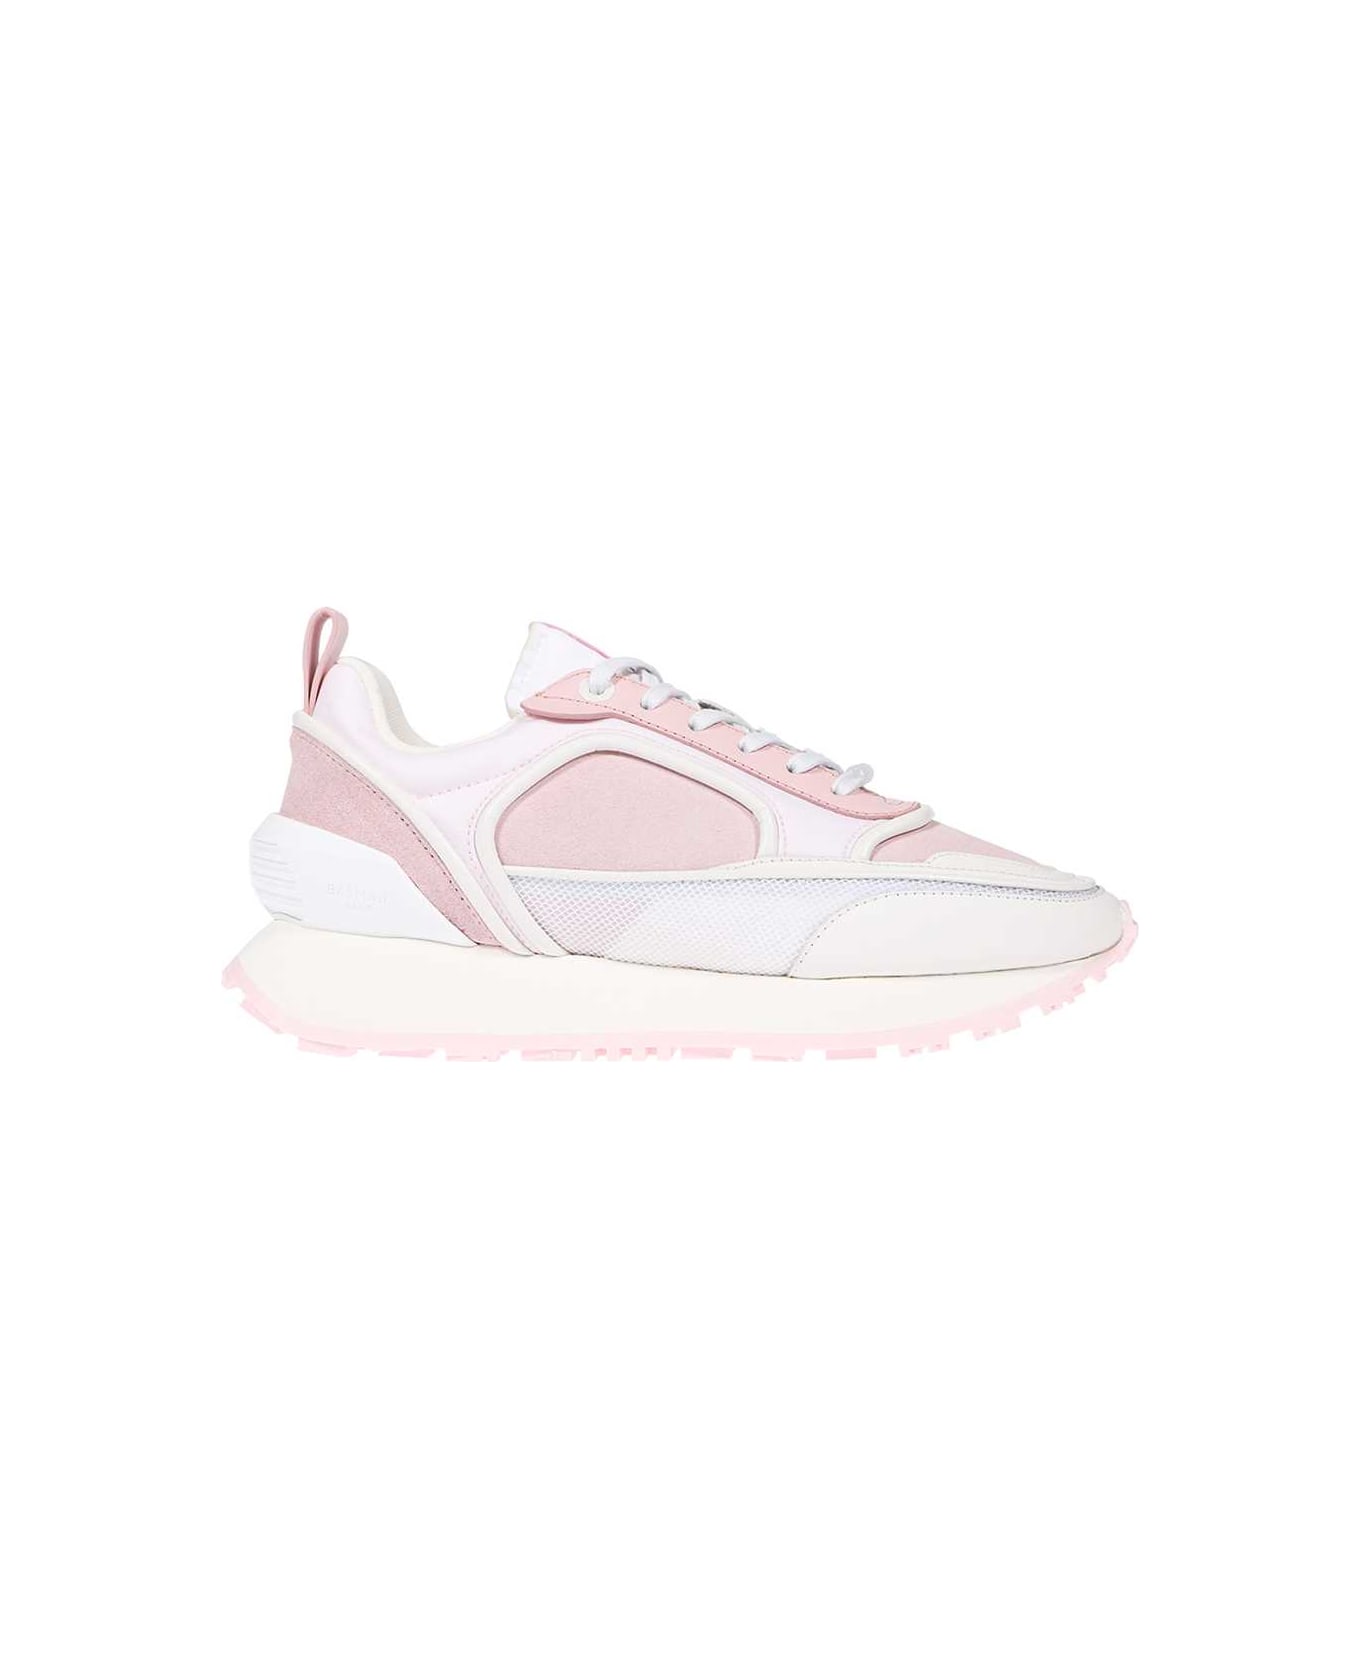 Balmain Low-top Sneakers - Pink